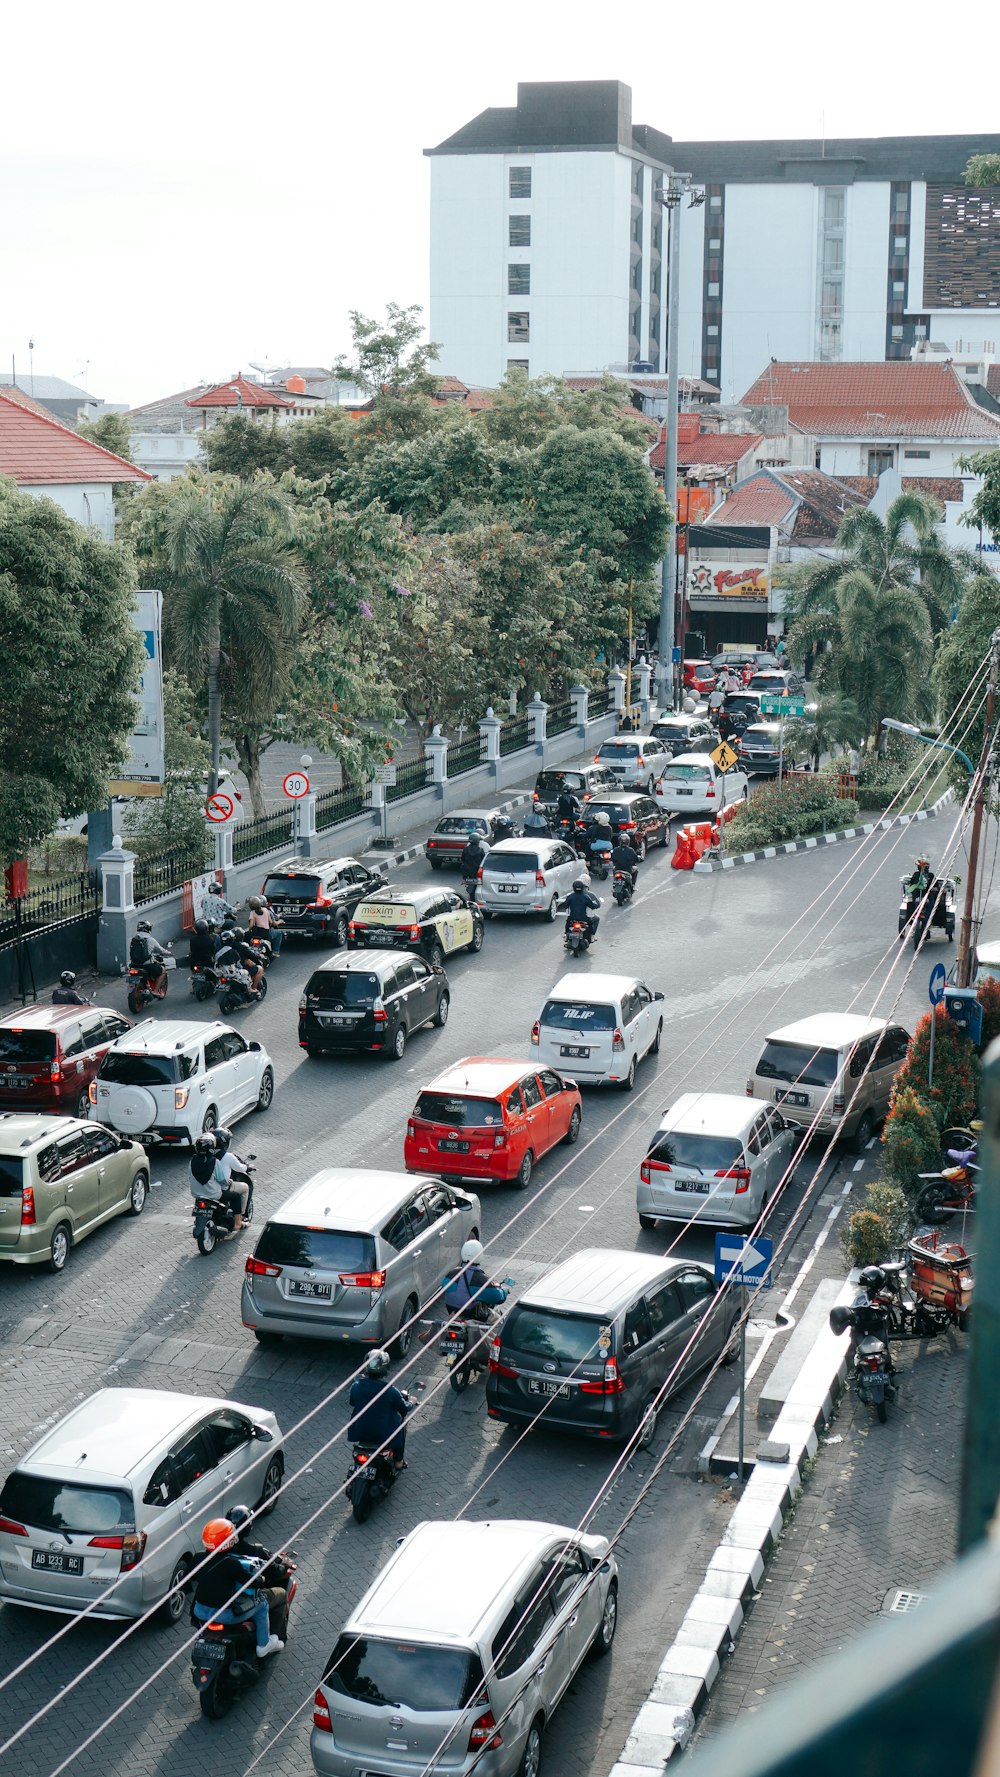 Una calle concurrida de la ciudad llena de mucho tráfico